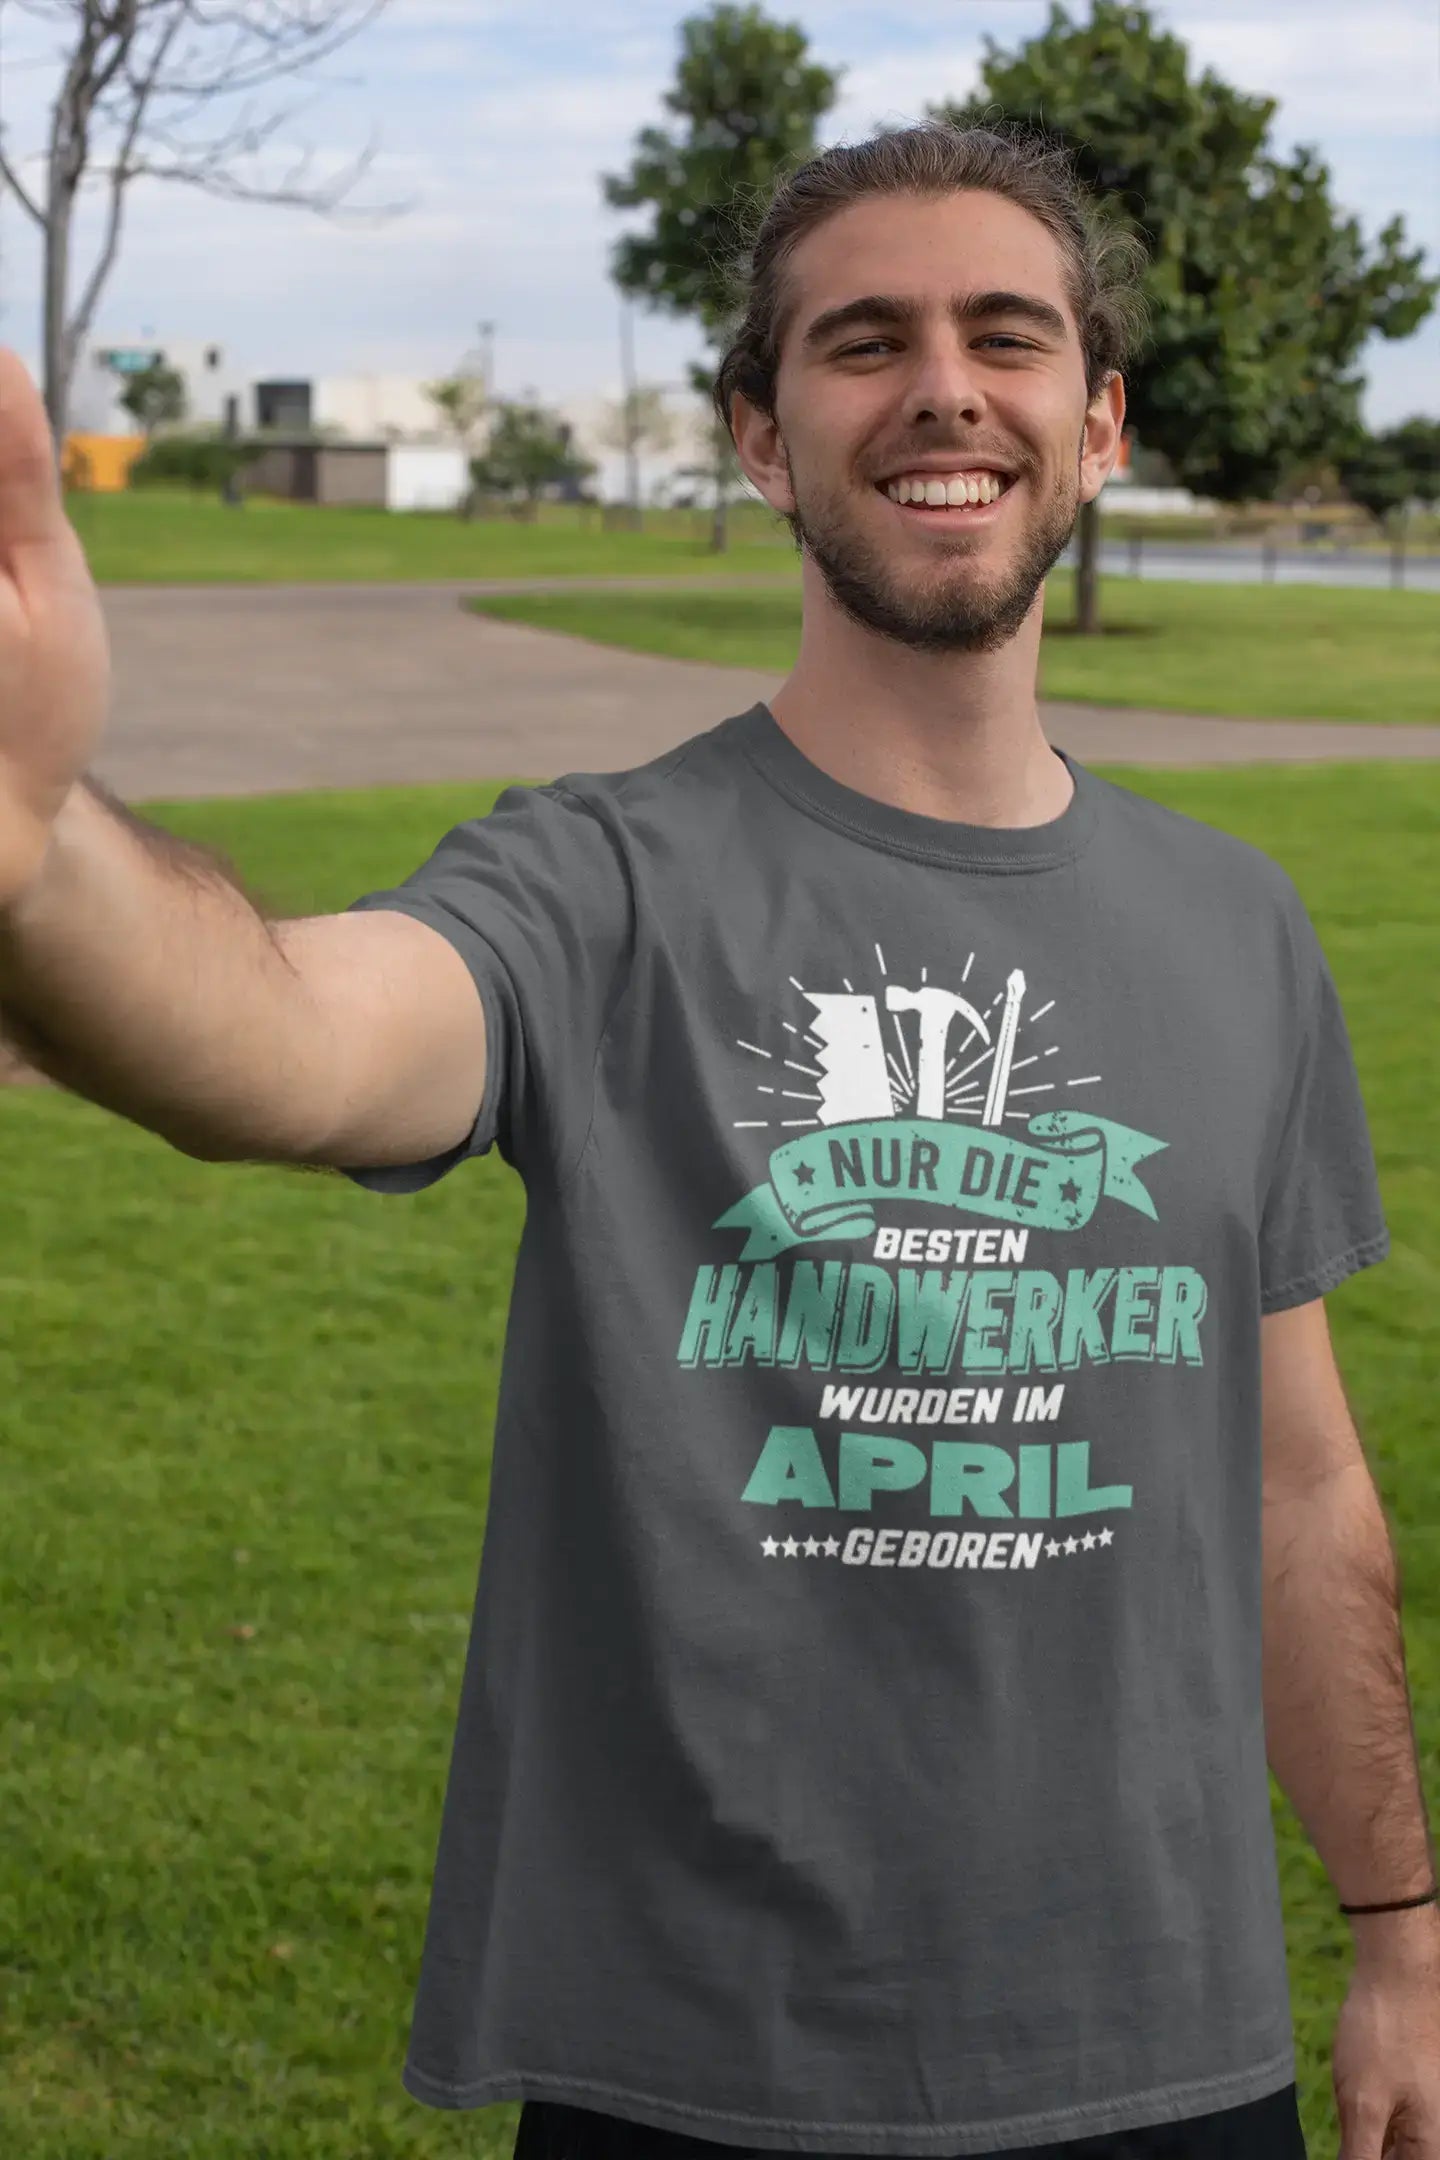 Men's Graphic T-Shirt Besten Handwerker Geboren Idea Gift